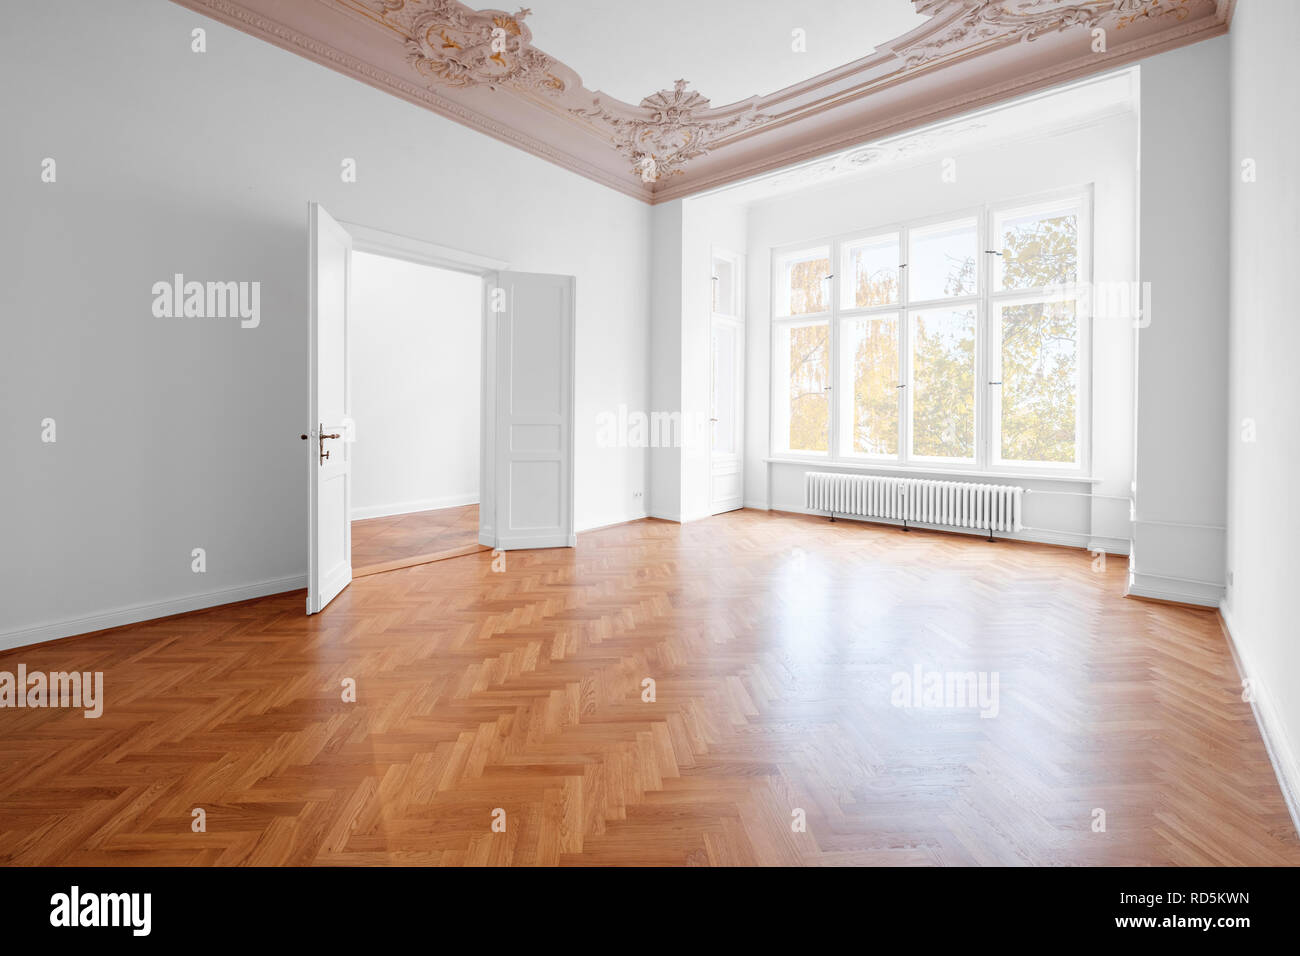 Salle vide, luxueux appartement / appartement dans immeuble ancien avec plancher en bois et stuc Banque D'Images